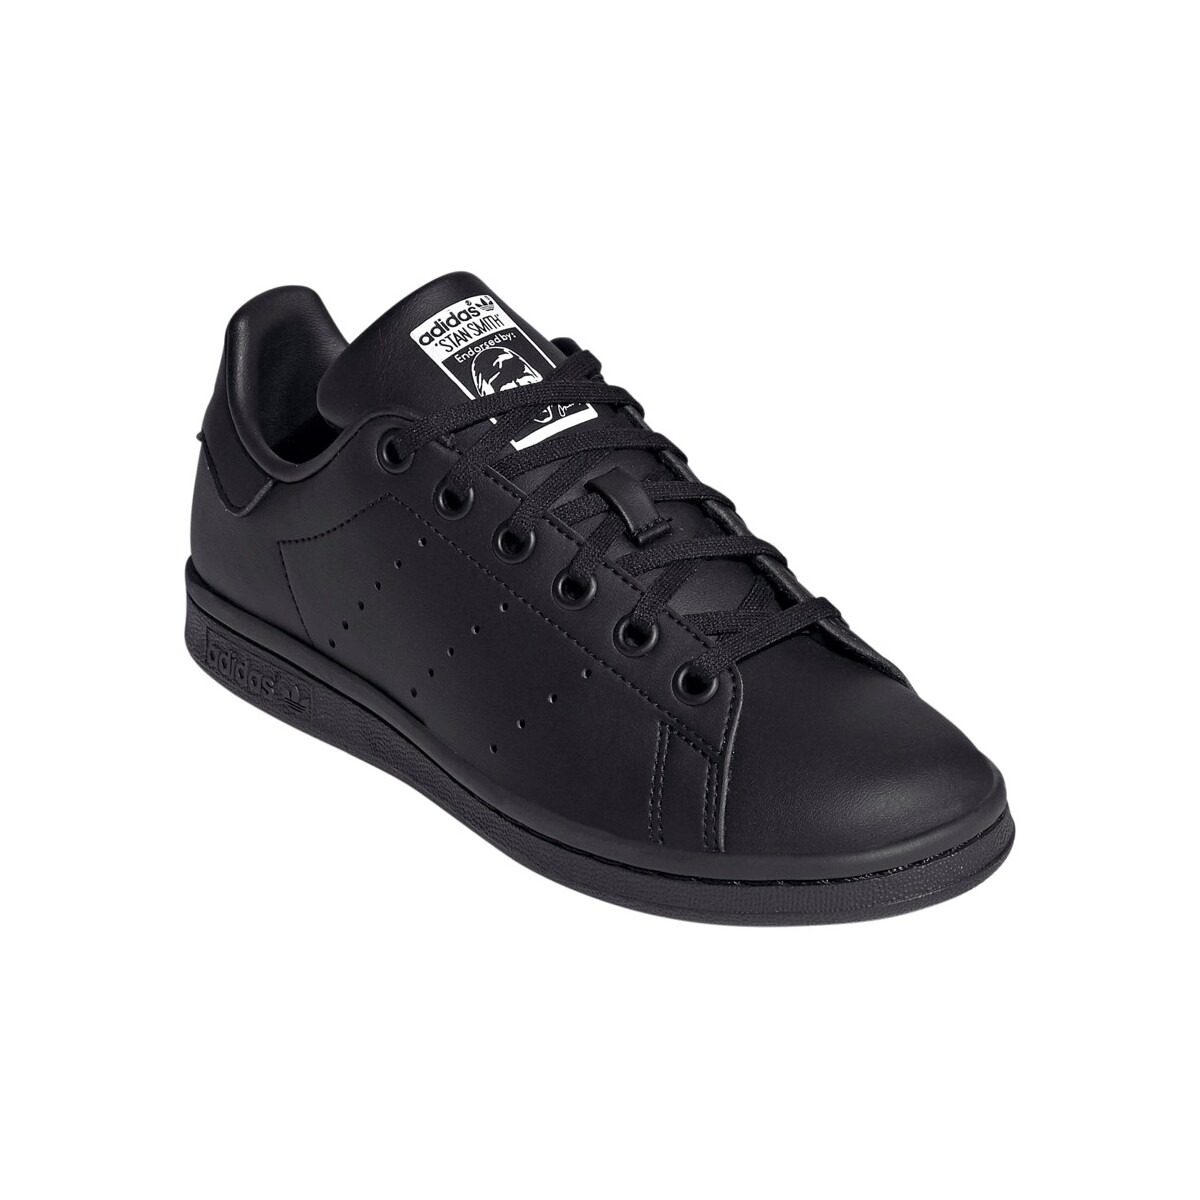 Schoenen Kinderen Sneakers adidas Originals Stan Smith J FX7523 Zwart